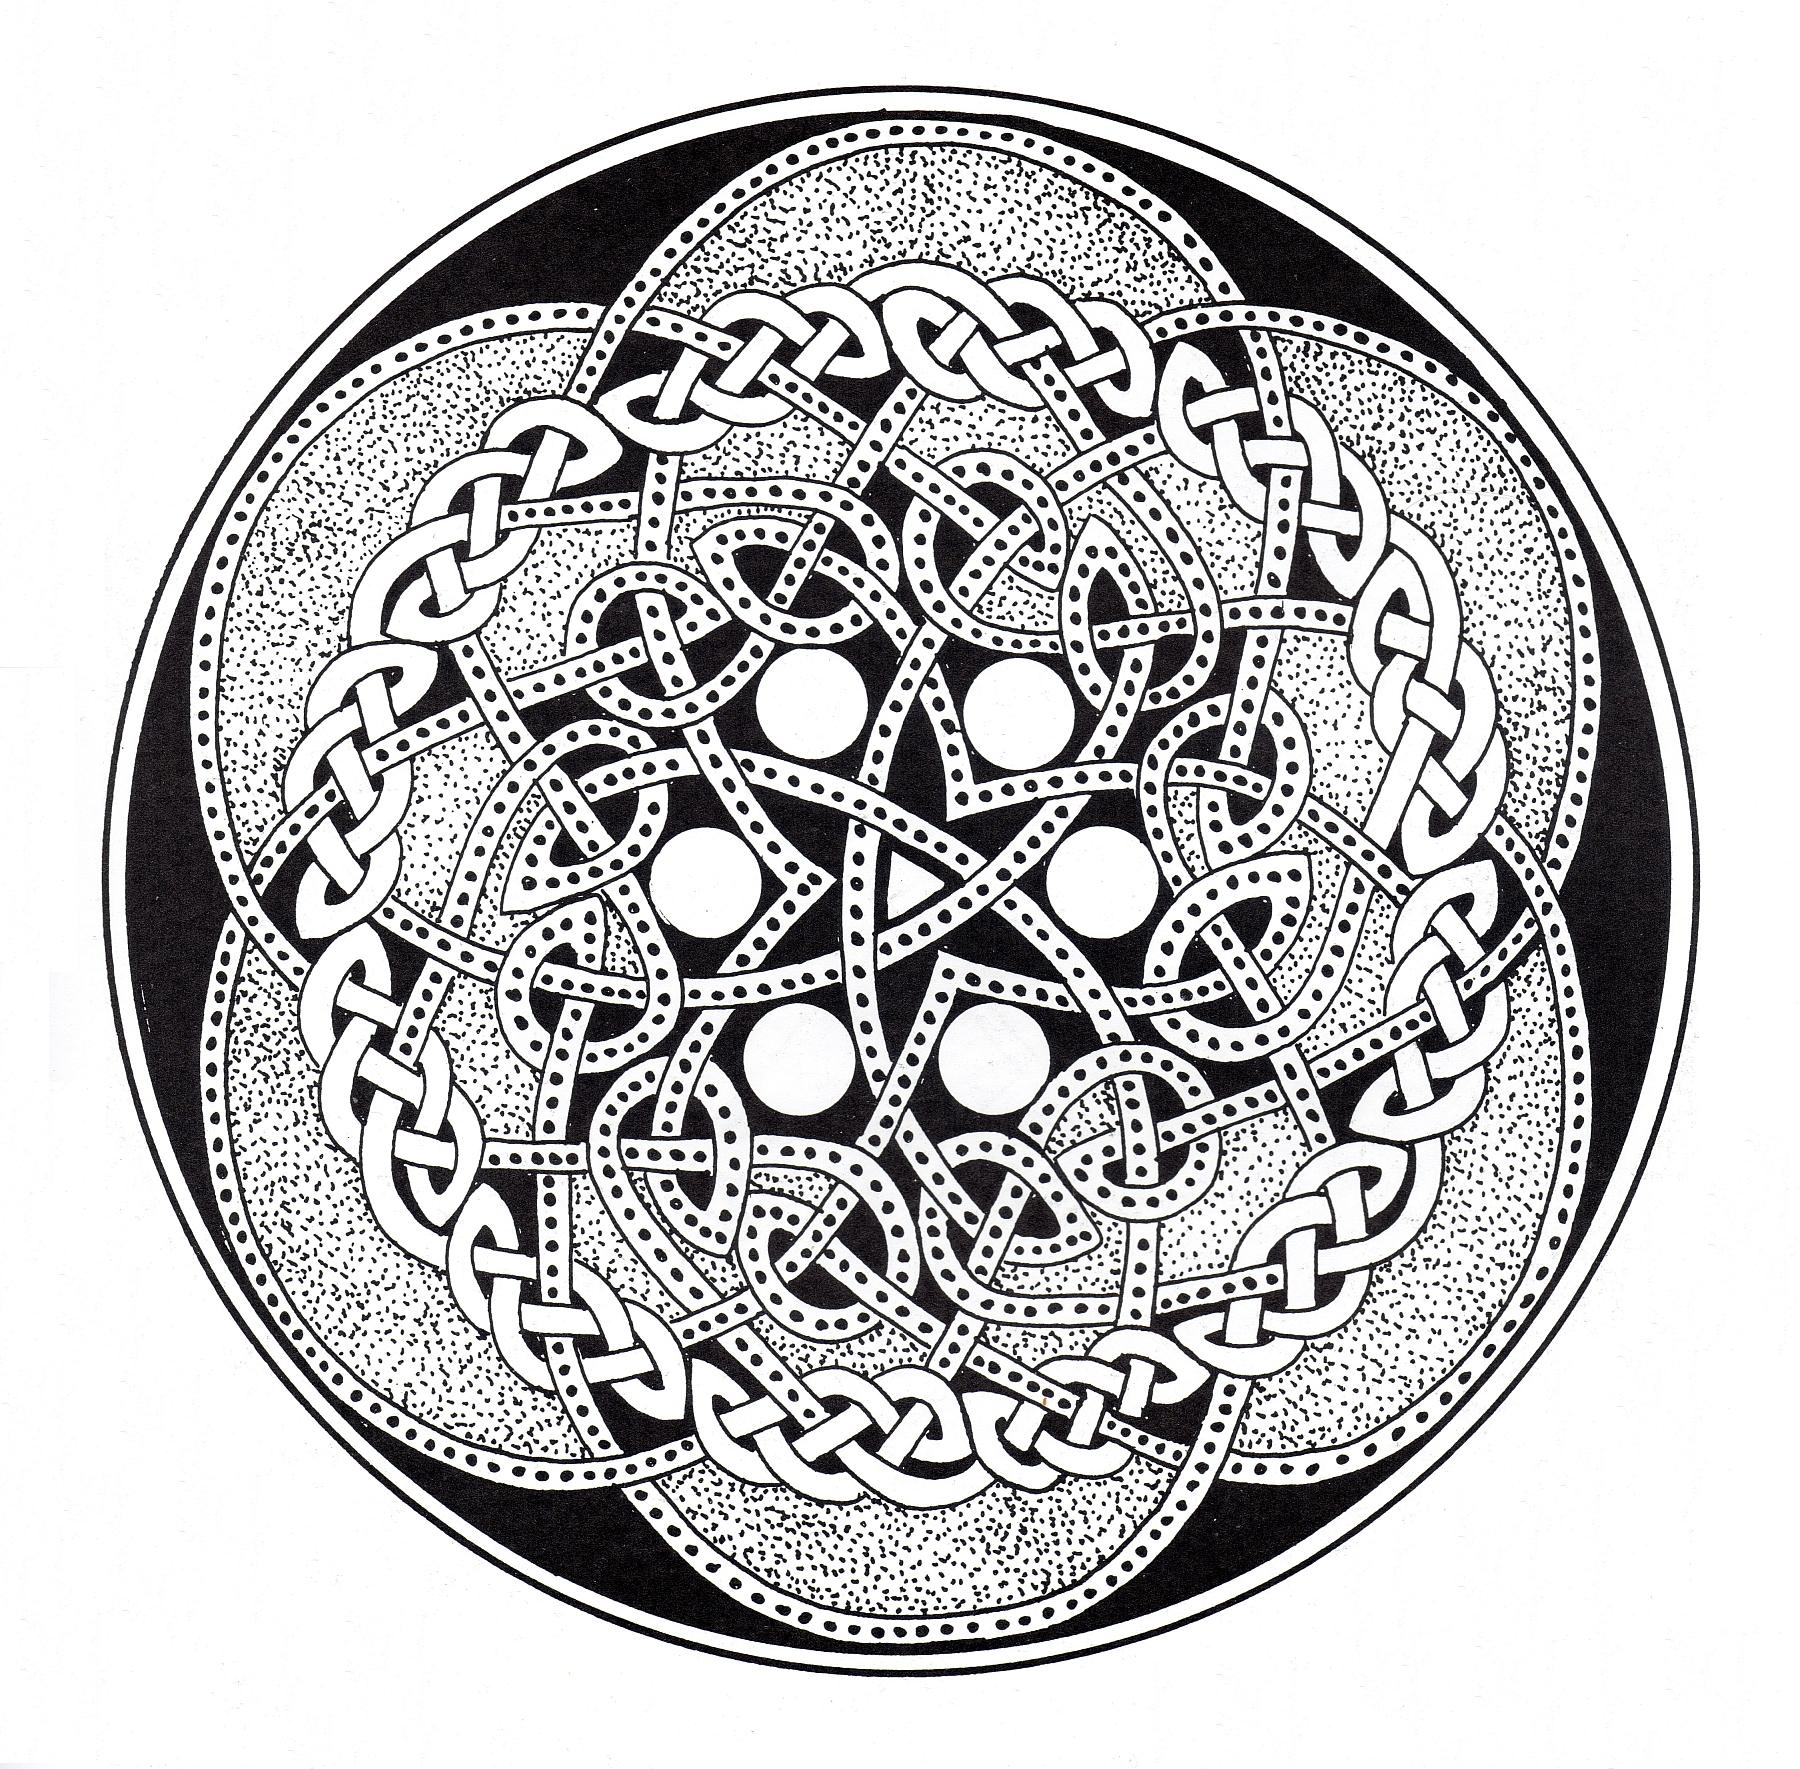 Si vous êtes prêt à passer de longues minutes de relaxation, préparez vous à colorier ce Mandala celtique noir & blanc assez complexes ... Vous pourrez utiliser de nombreuses couleurs si vous le souhaitez.